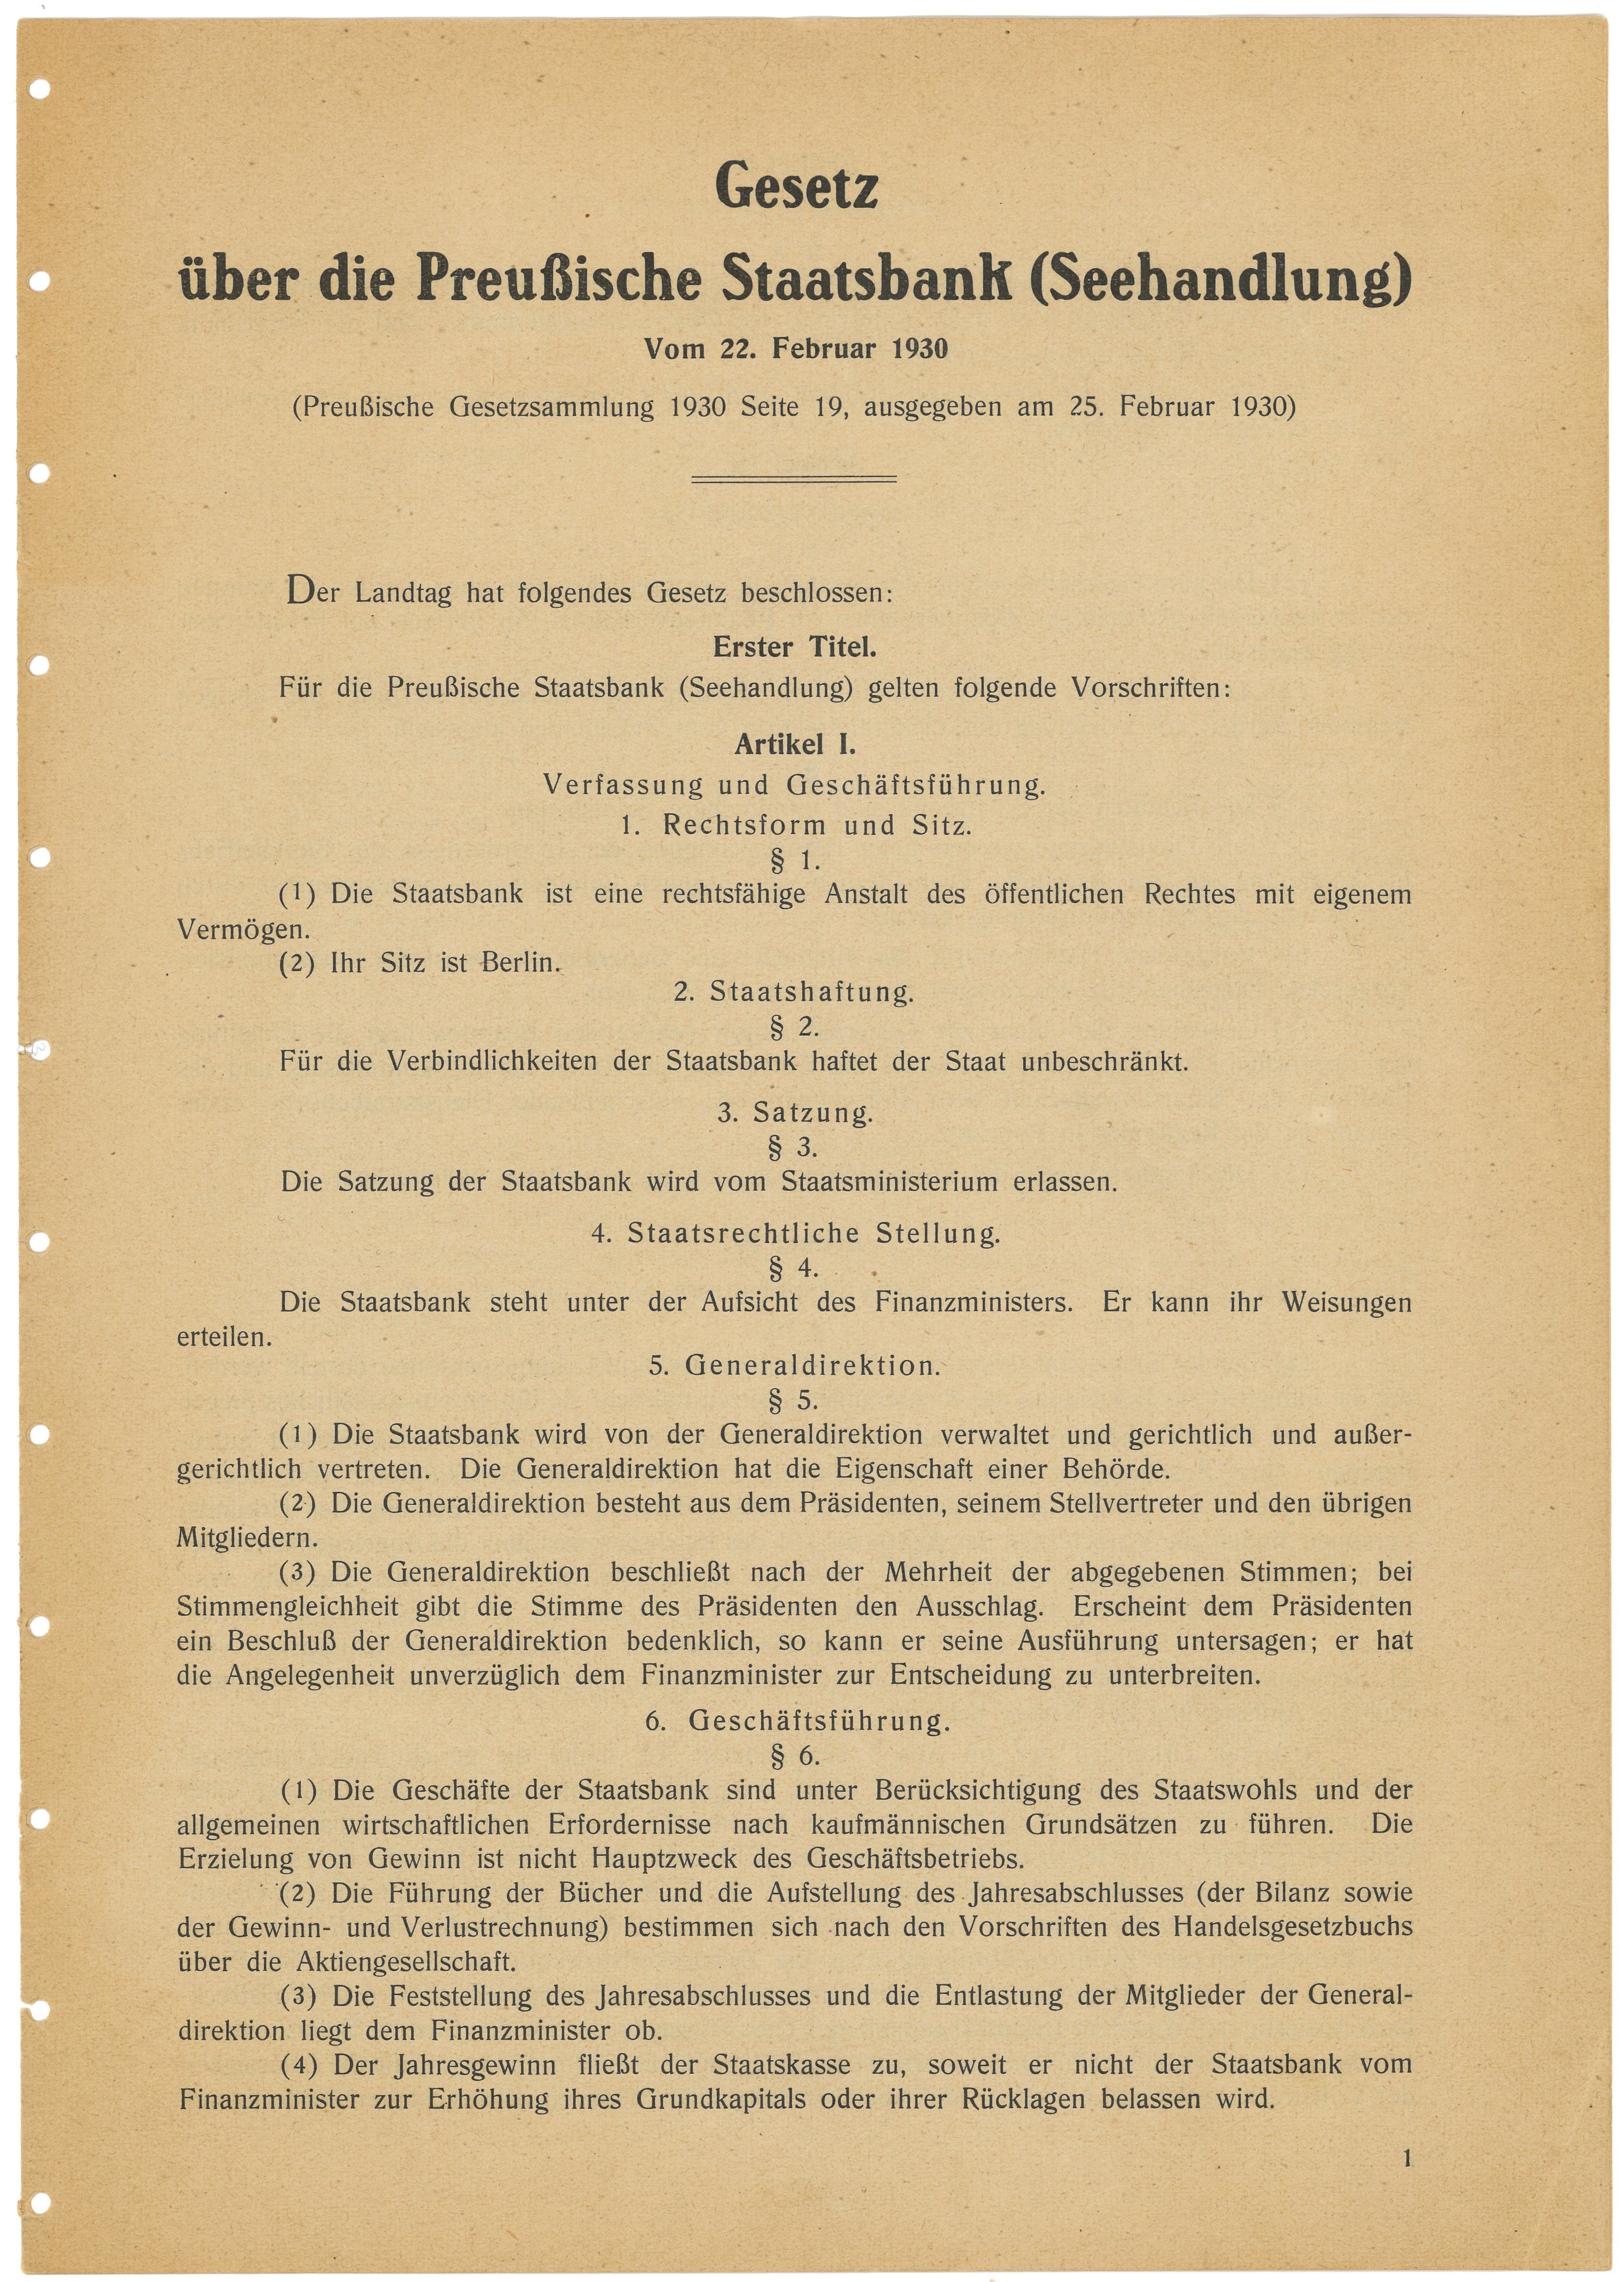 Gesetz über die Preußische Staatsbank (Seehandlung) und deren Satzung 1930 (Landesgeschichtliche Vereinigung für die Mark Brandenburg e.V., Archiv CC BY)